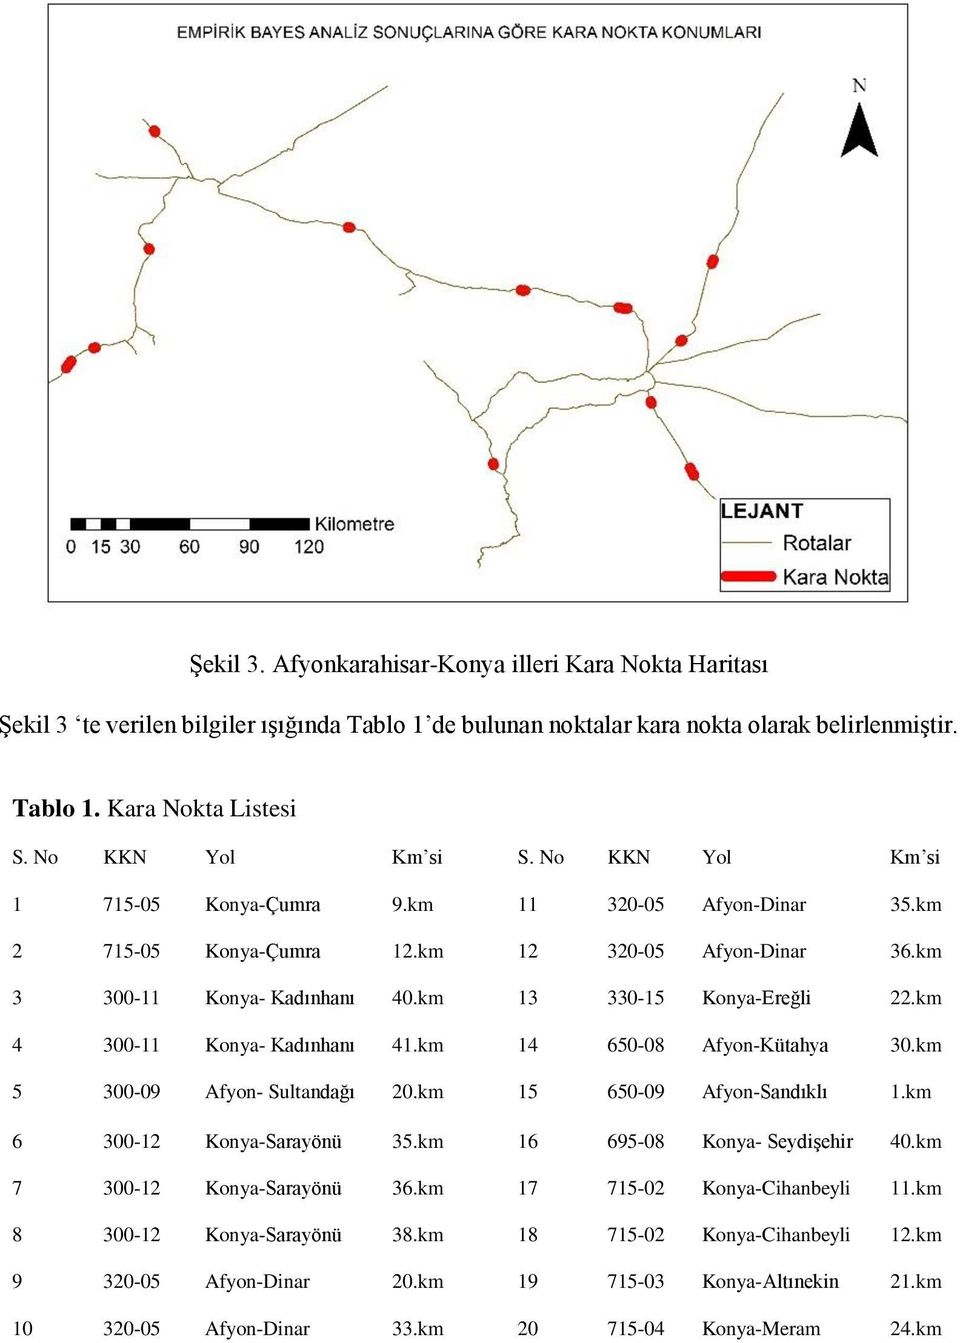 km 13 330-15 Konya-Ereğli 22.km 4 300-11 Konya- Kadınhanı 41.km 14 650-08 Afyon-Kütahya 30.km 5 300-09 Afyon- Sultandağı 20.km 15 650-09 Afyon-Sandıklı 1.km 6 300-12 Konya-Sarayönü 35.